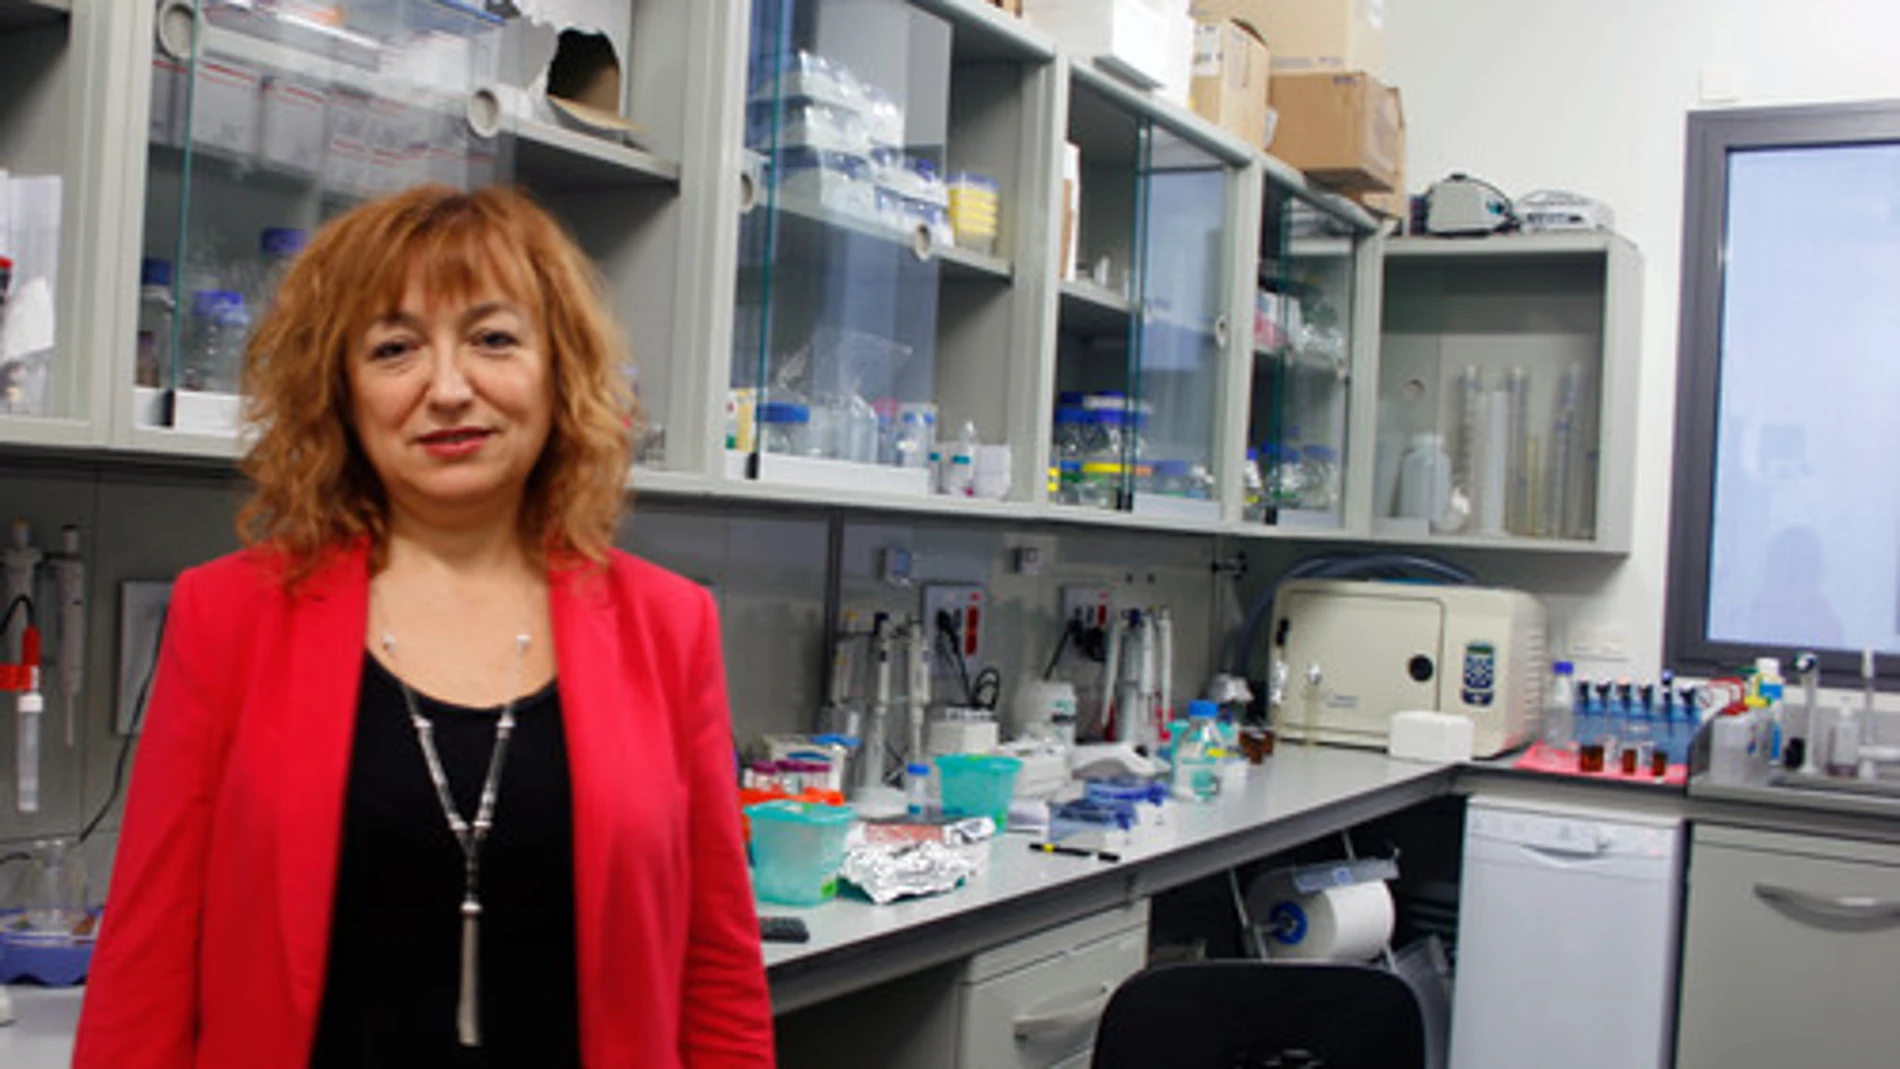 La responsable del Grupo de NanoBioSensores y Aplicaciones Bioanalíticas del ICN2 catalán, Laura Lechuga